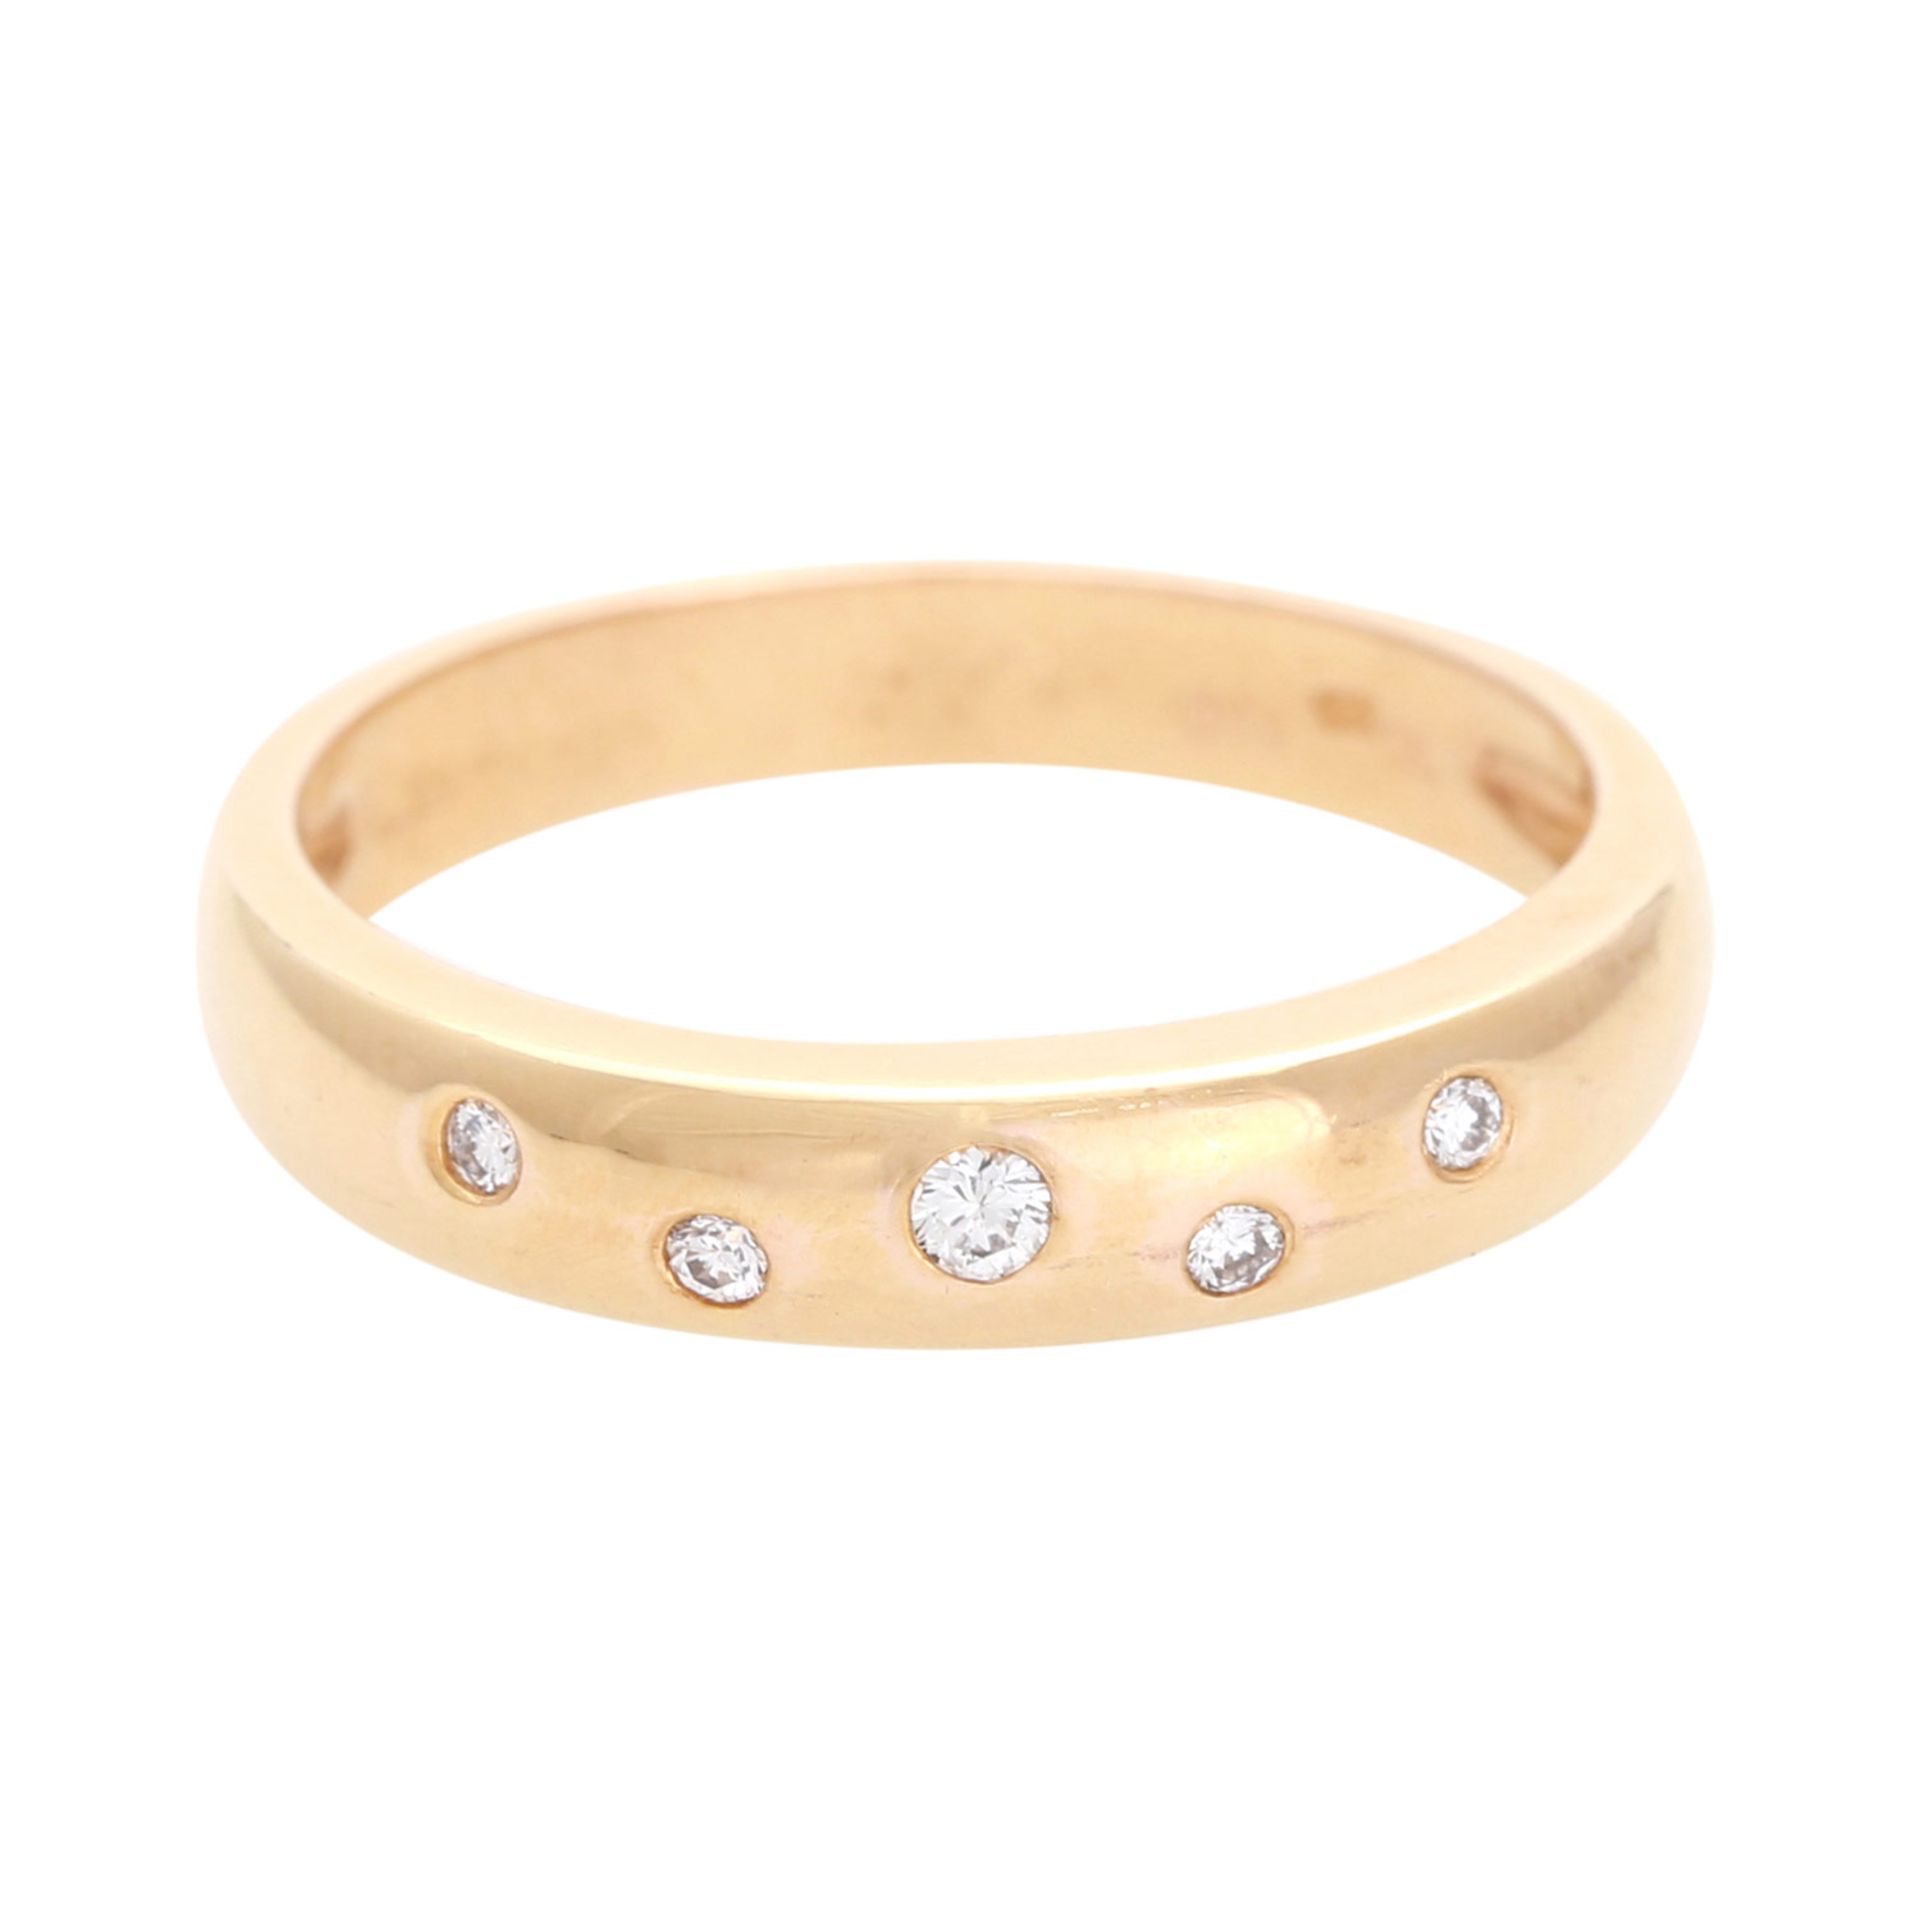 Ring mit 5 kleinen Diamanten, zus. ca. 0,09 ct, GG 14K, RW 54,5, eingeriebene Fassung.